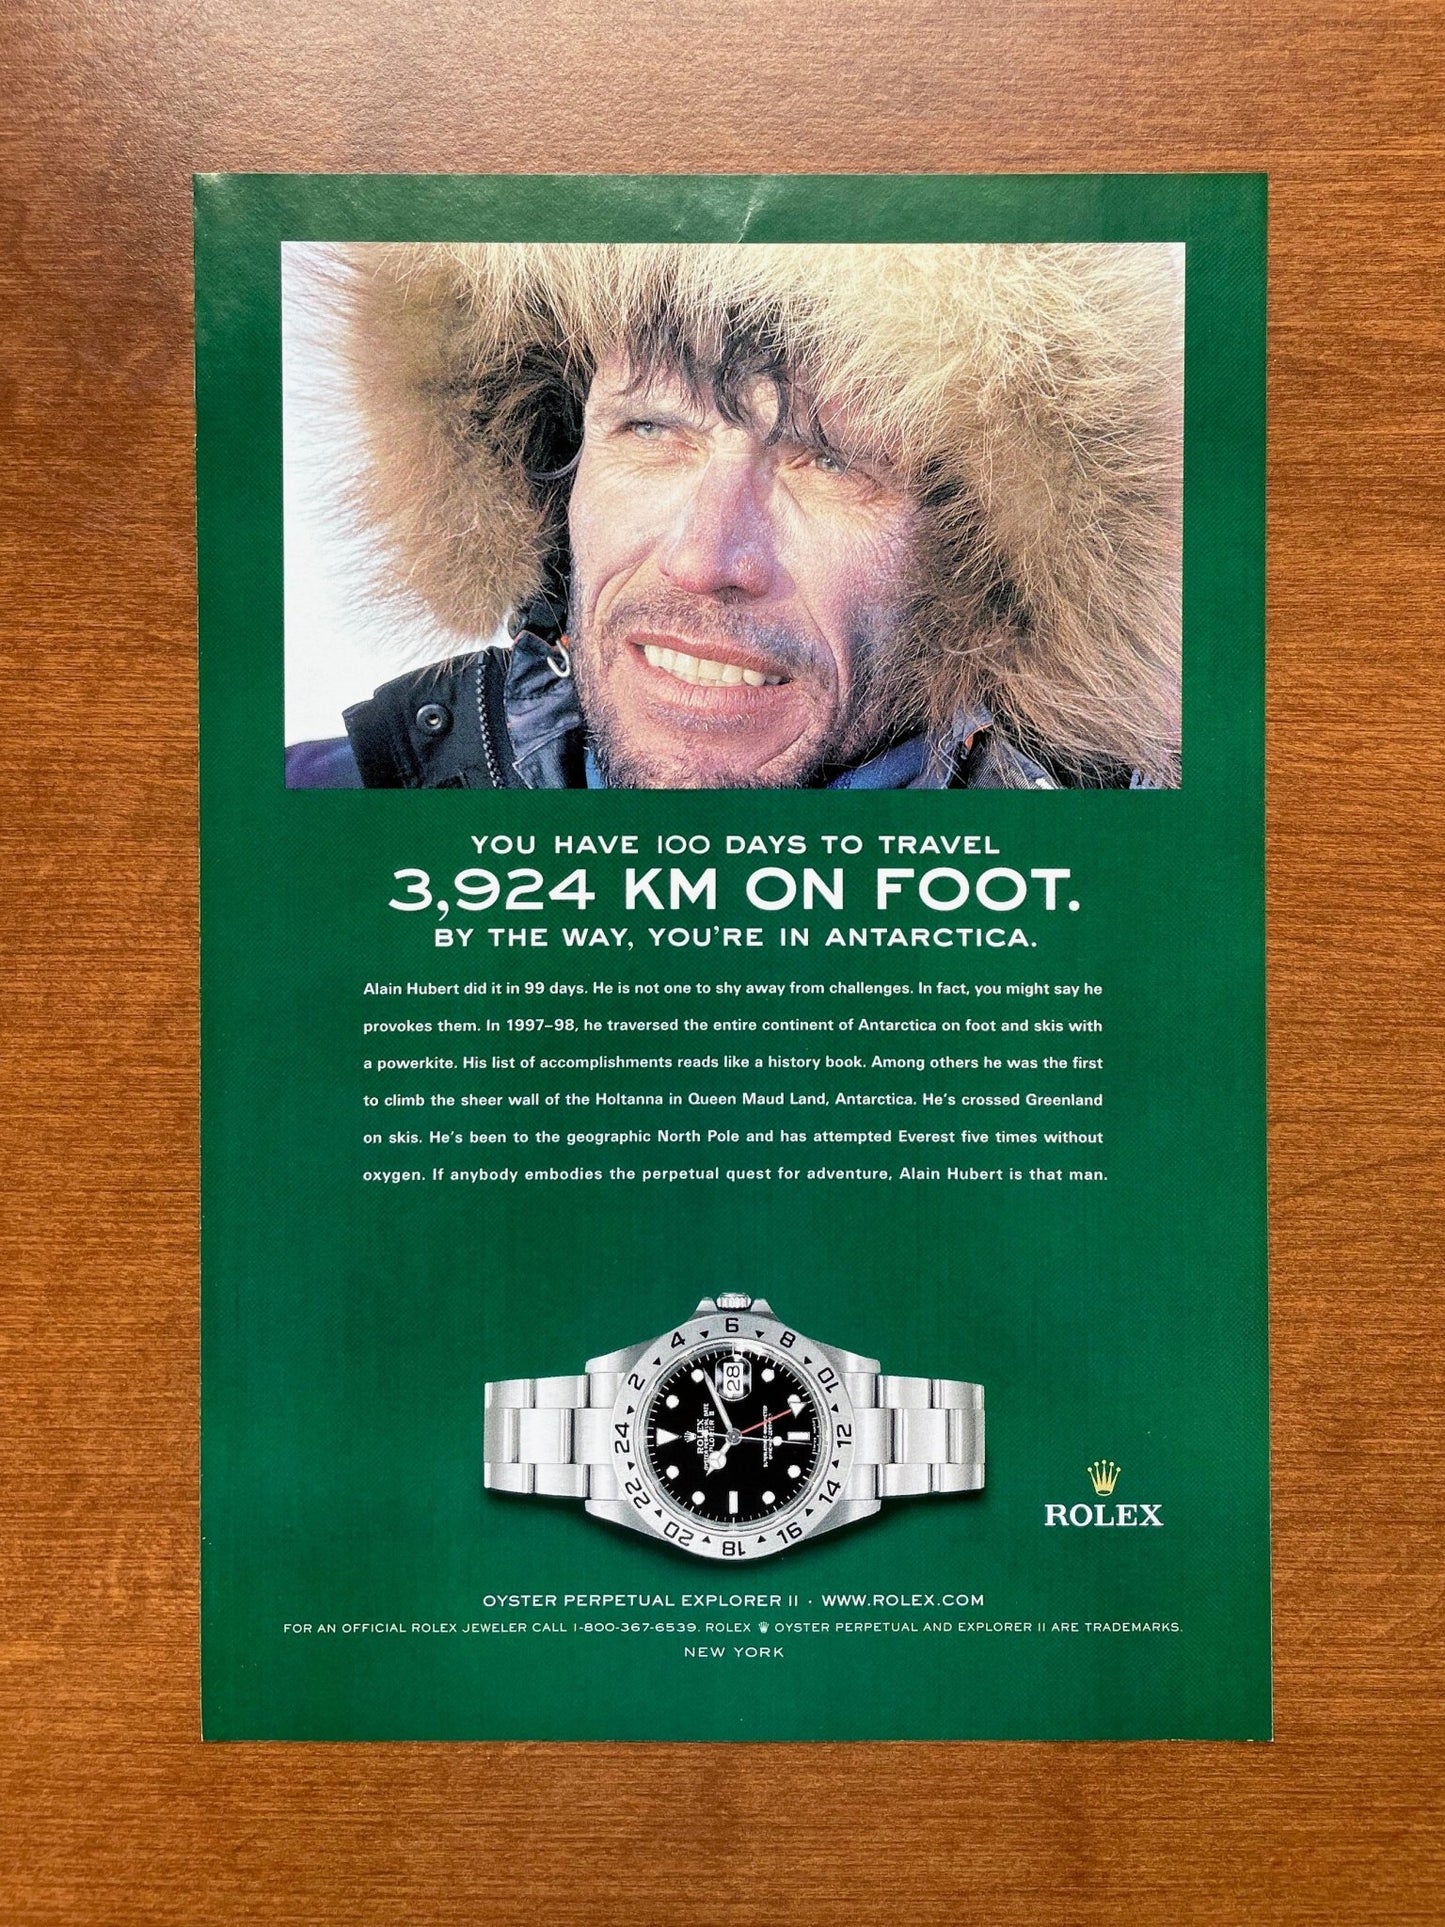 2004 Rolex Explorer II Ref. 16570 "3,924 KM On Foot." Advertisement